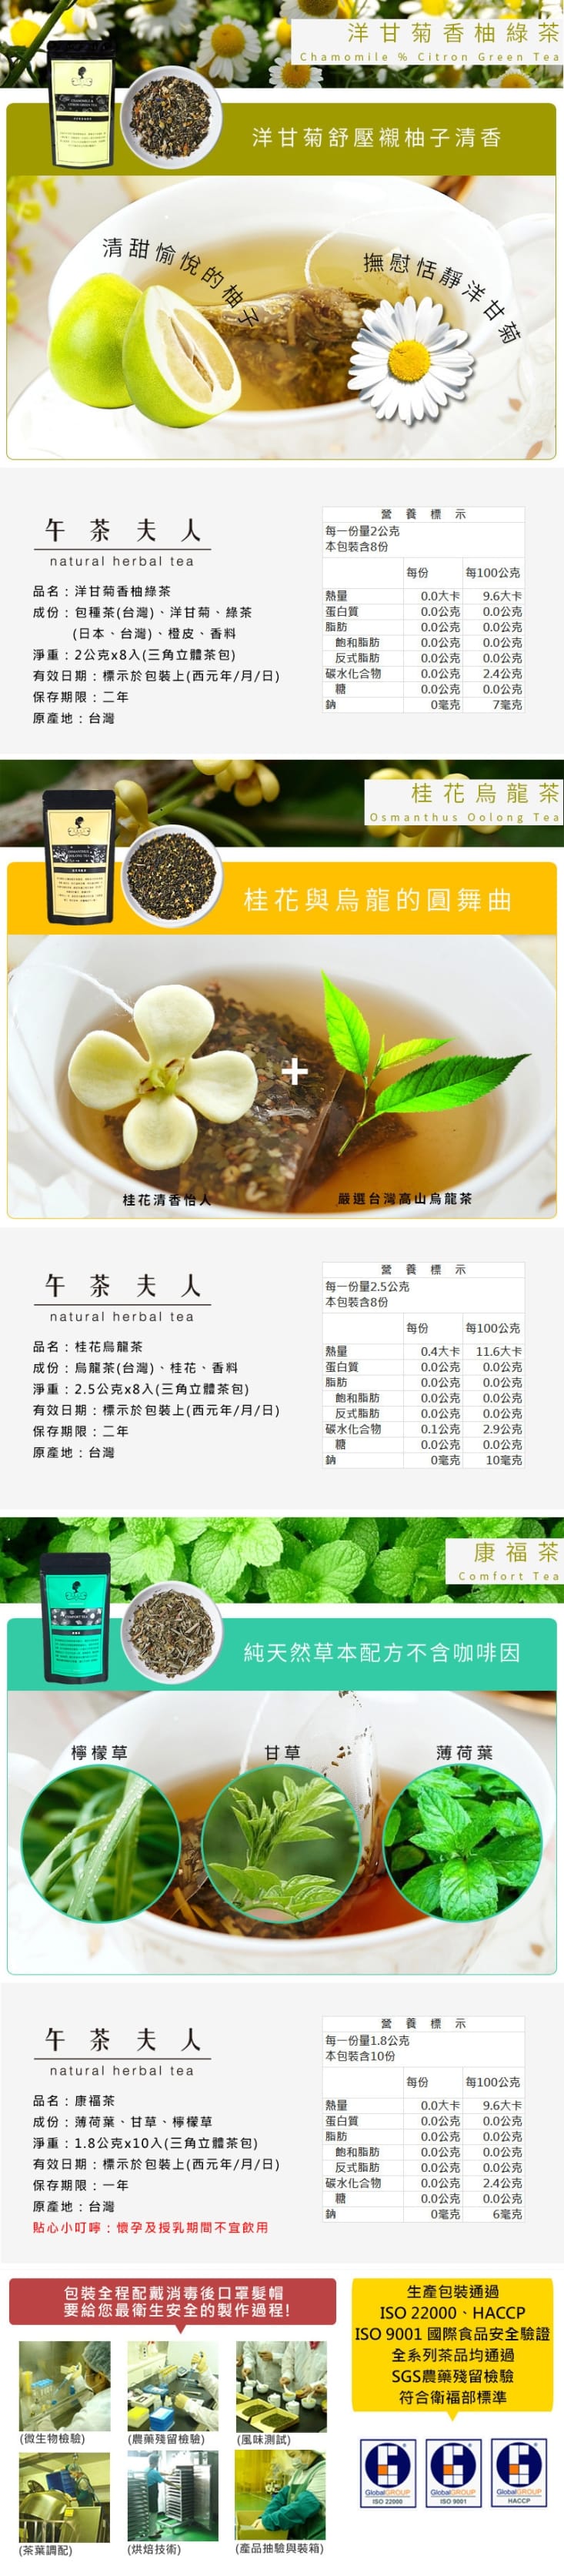 【午茶夫人】 風味茶系列任選 三角立體茶包 花茶 紅茶 綠茶 烏龍茶 水果茶